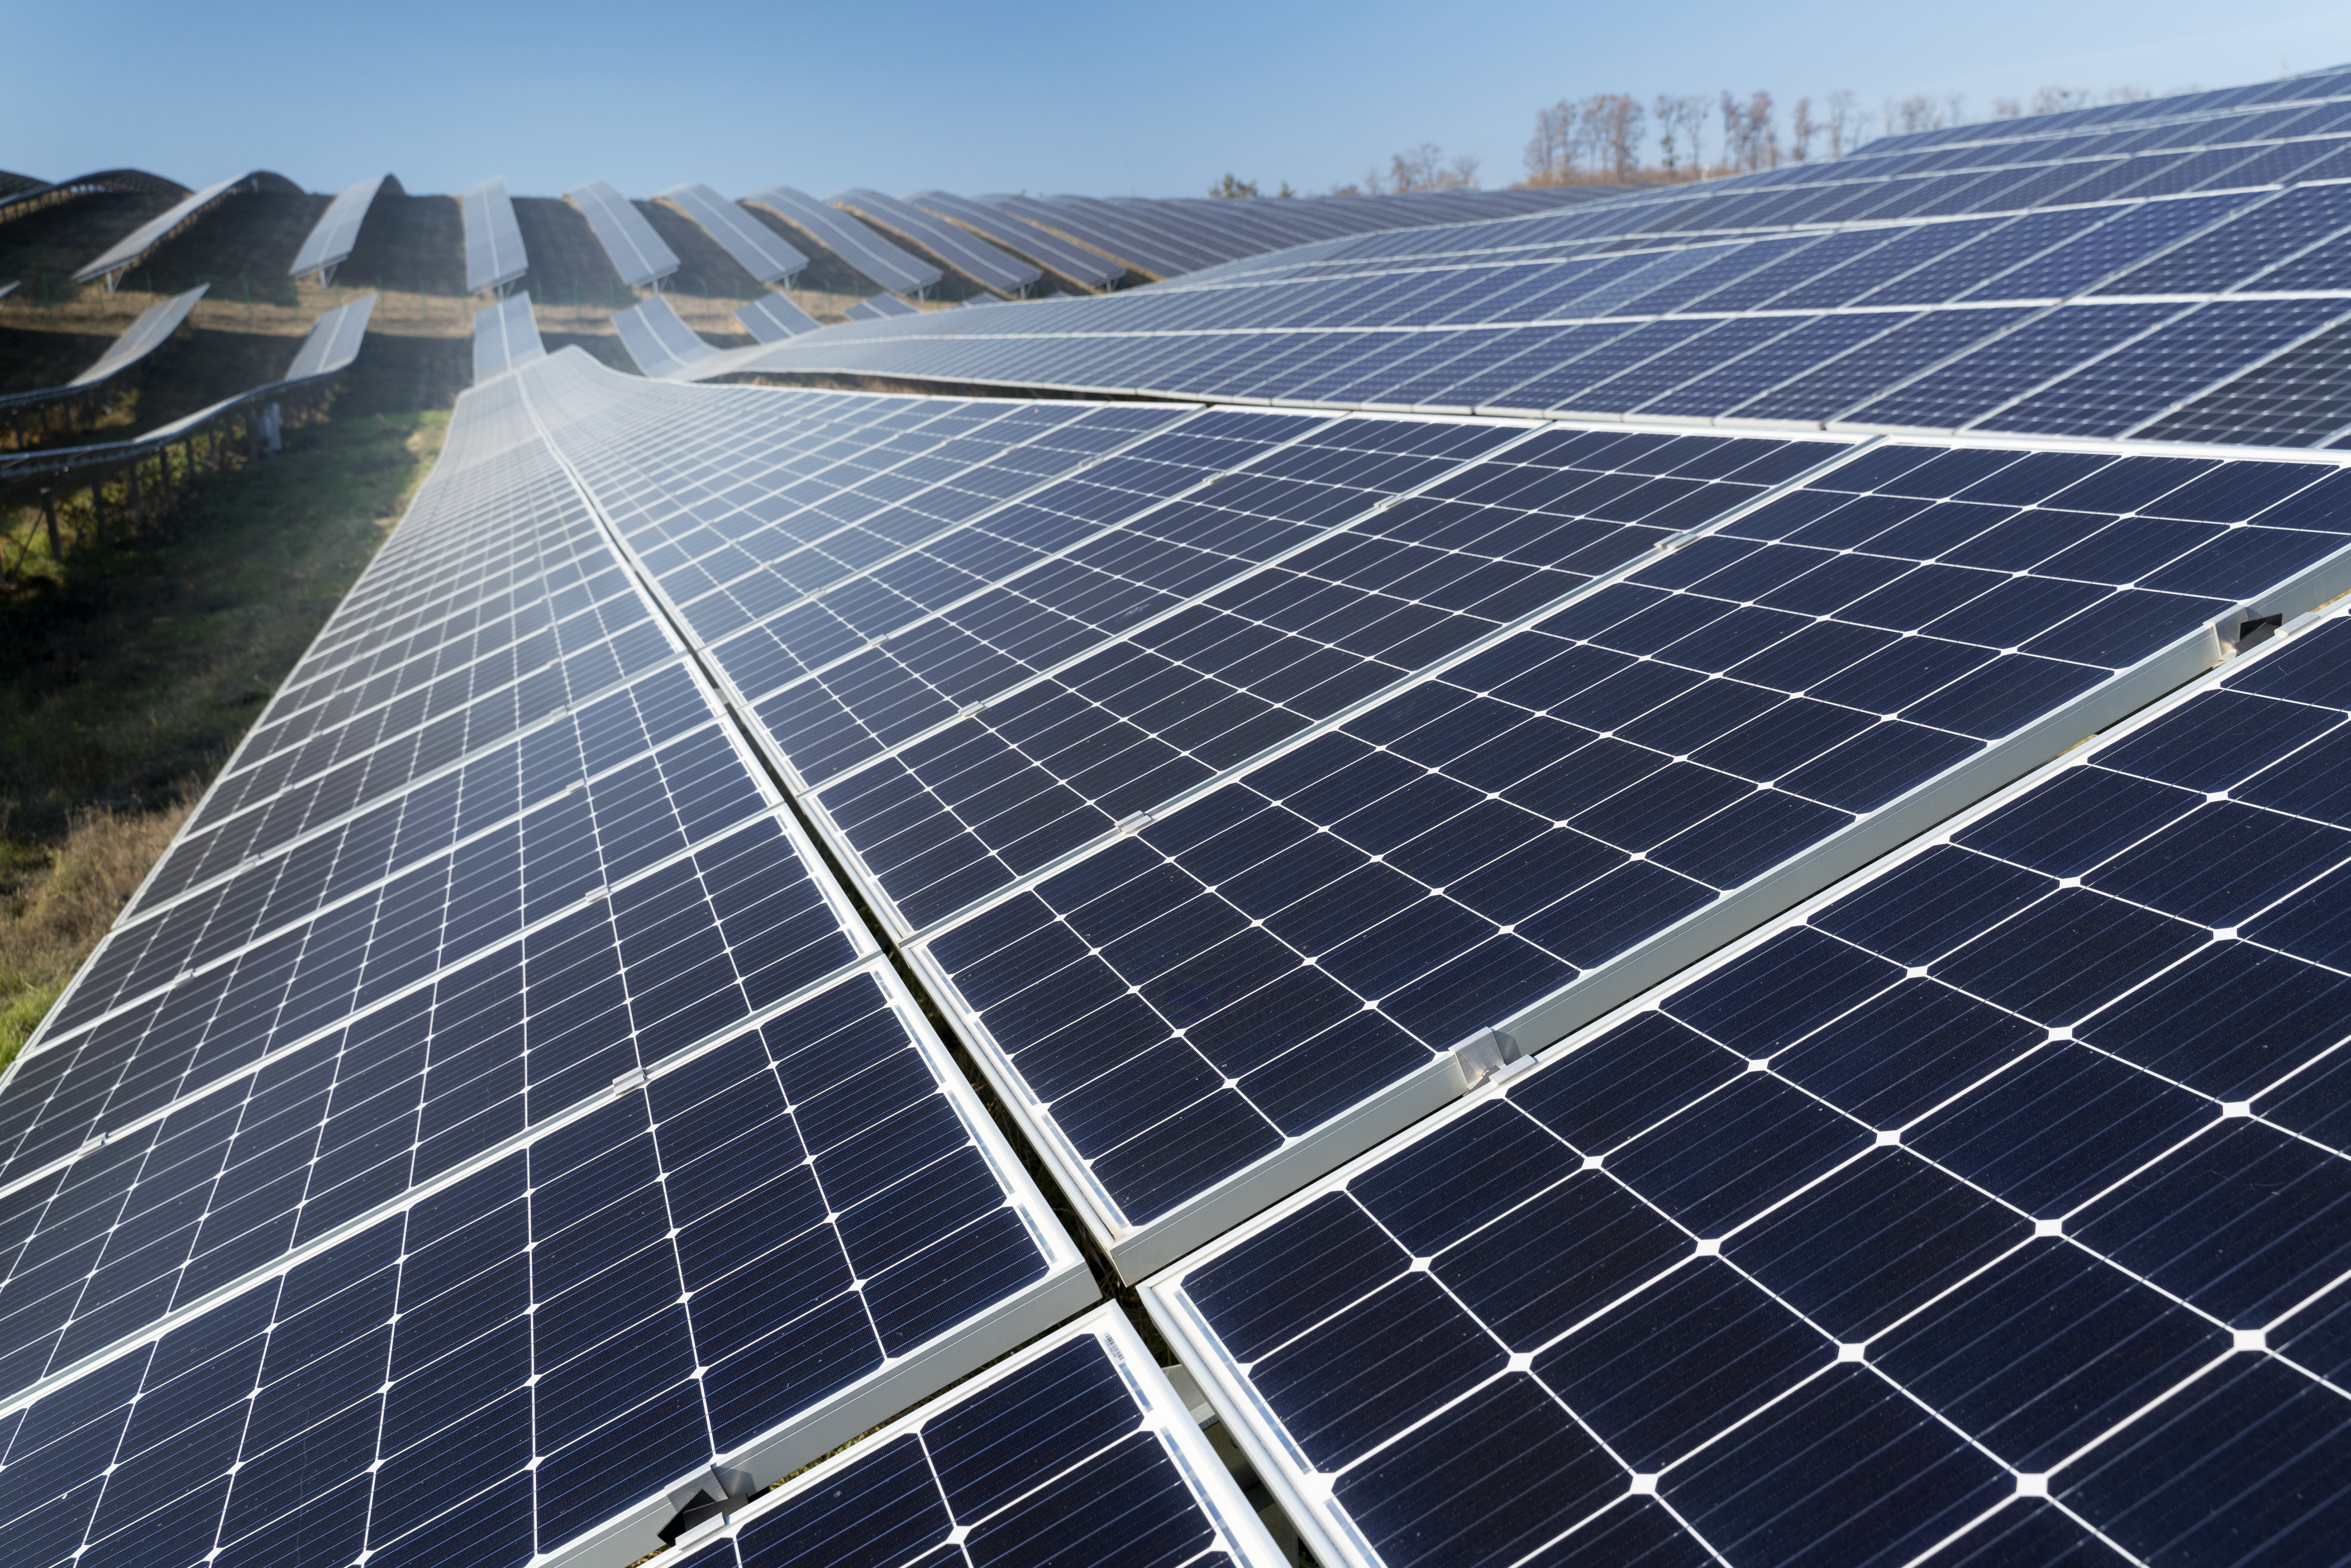 Programa de isenção fiscal para semicondutores inclui painéis solares